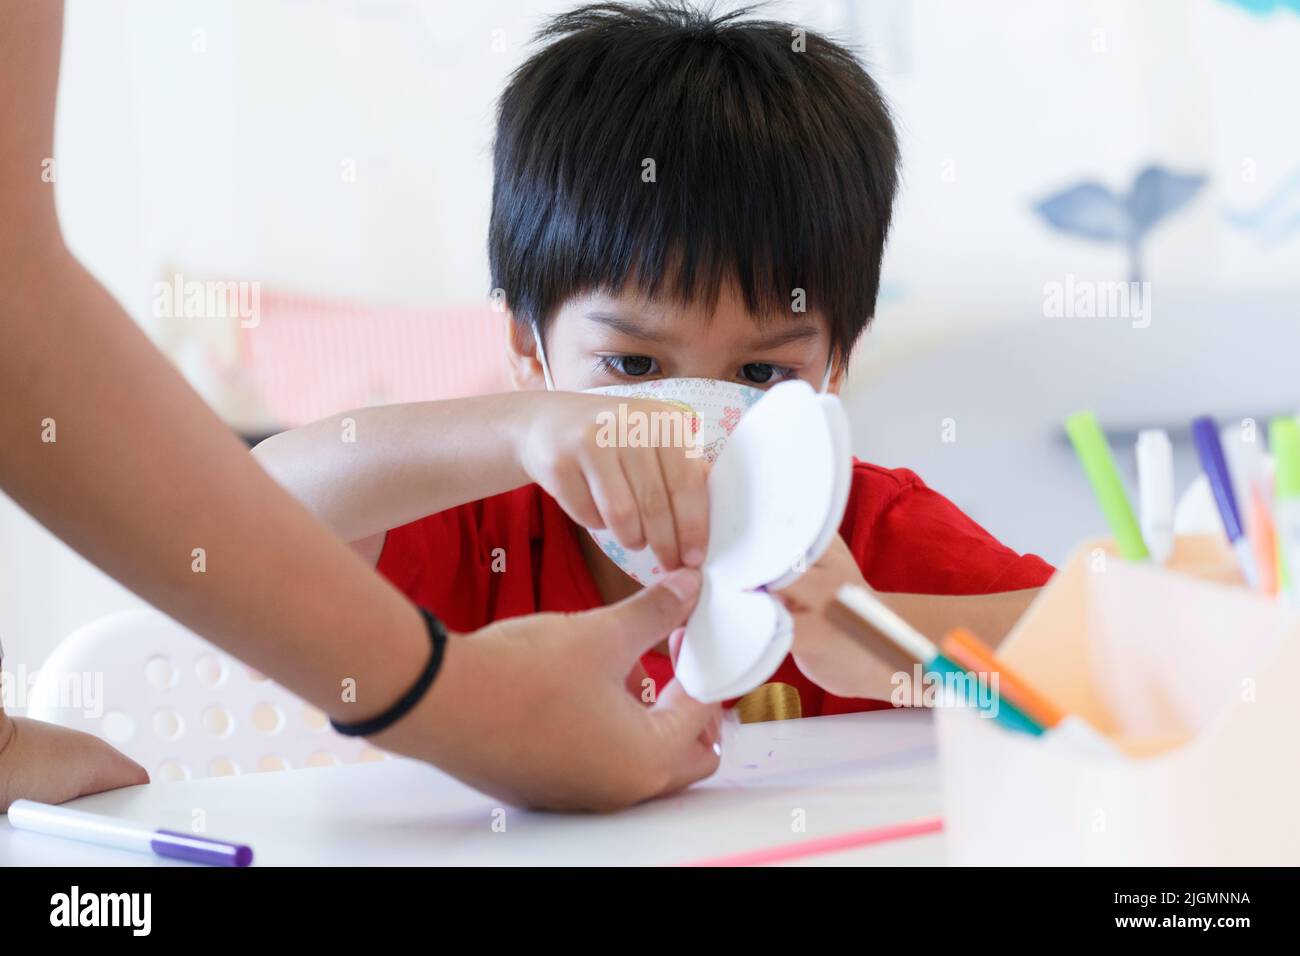 Petit enfant tenant du papier papillon. Un garçon étudiant en Asie apprend à fabriquer du papier papillon à partir d'un enseignant en salle de classe de maternelle à l'école maternelle Banque D'Images